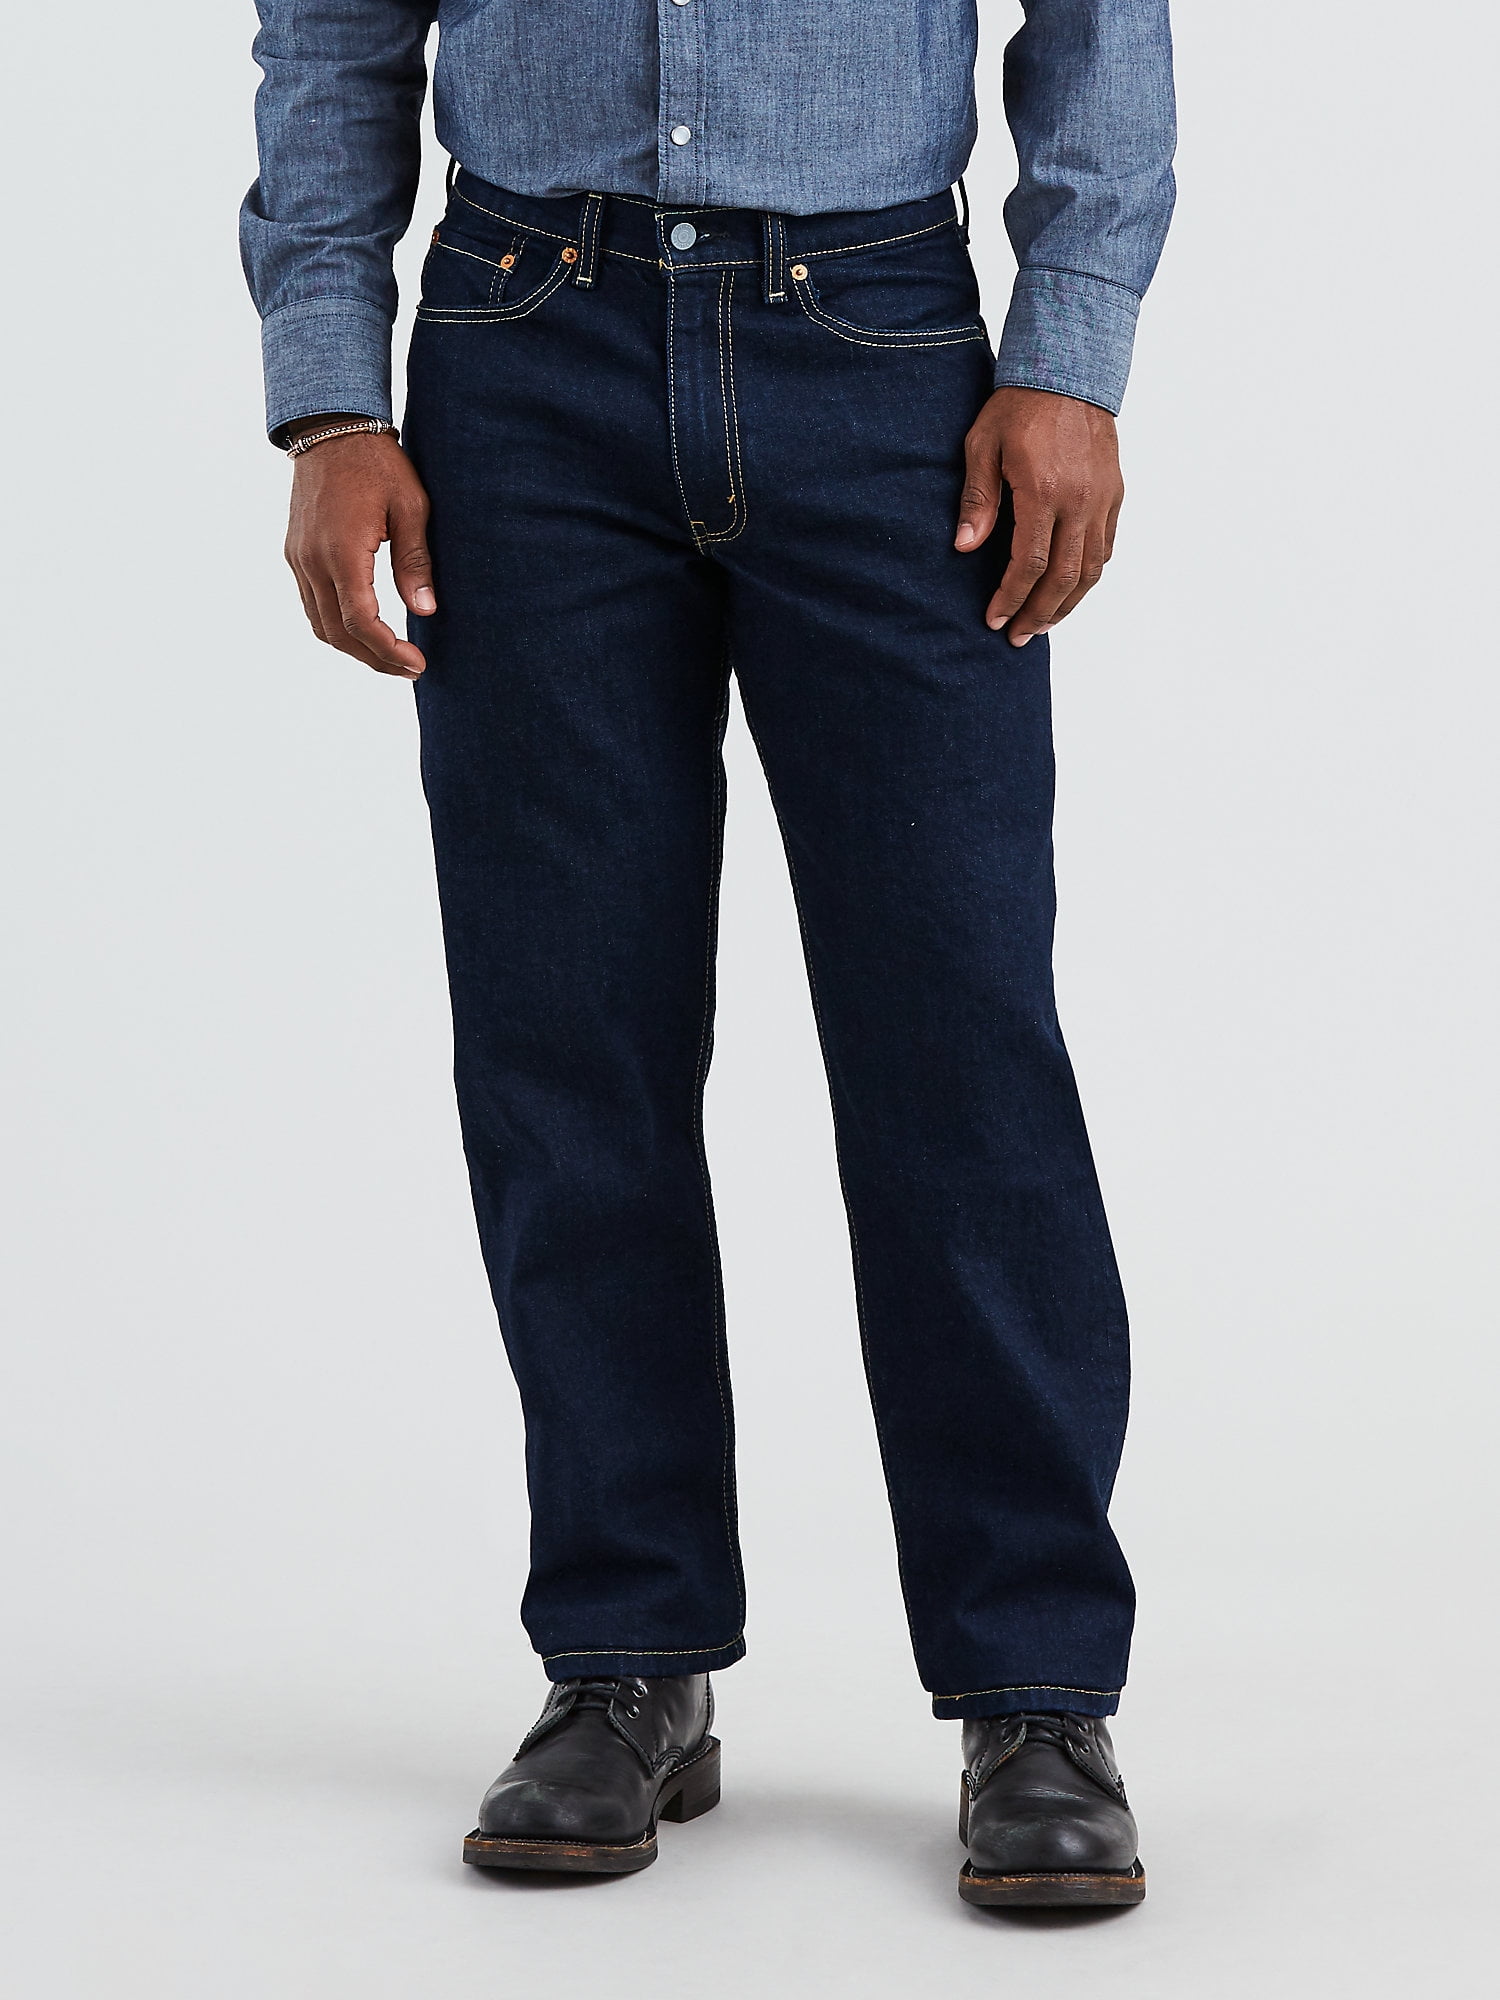 levis 550 jeans sale